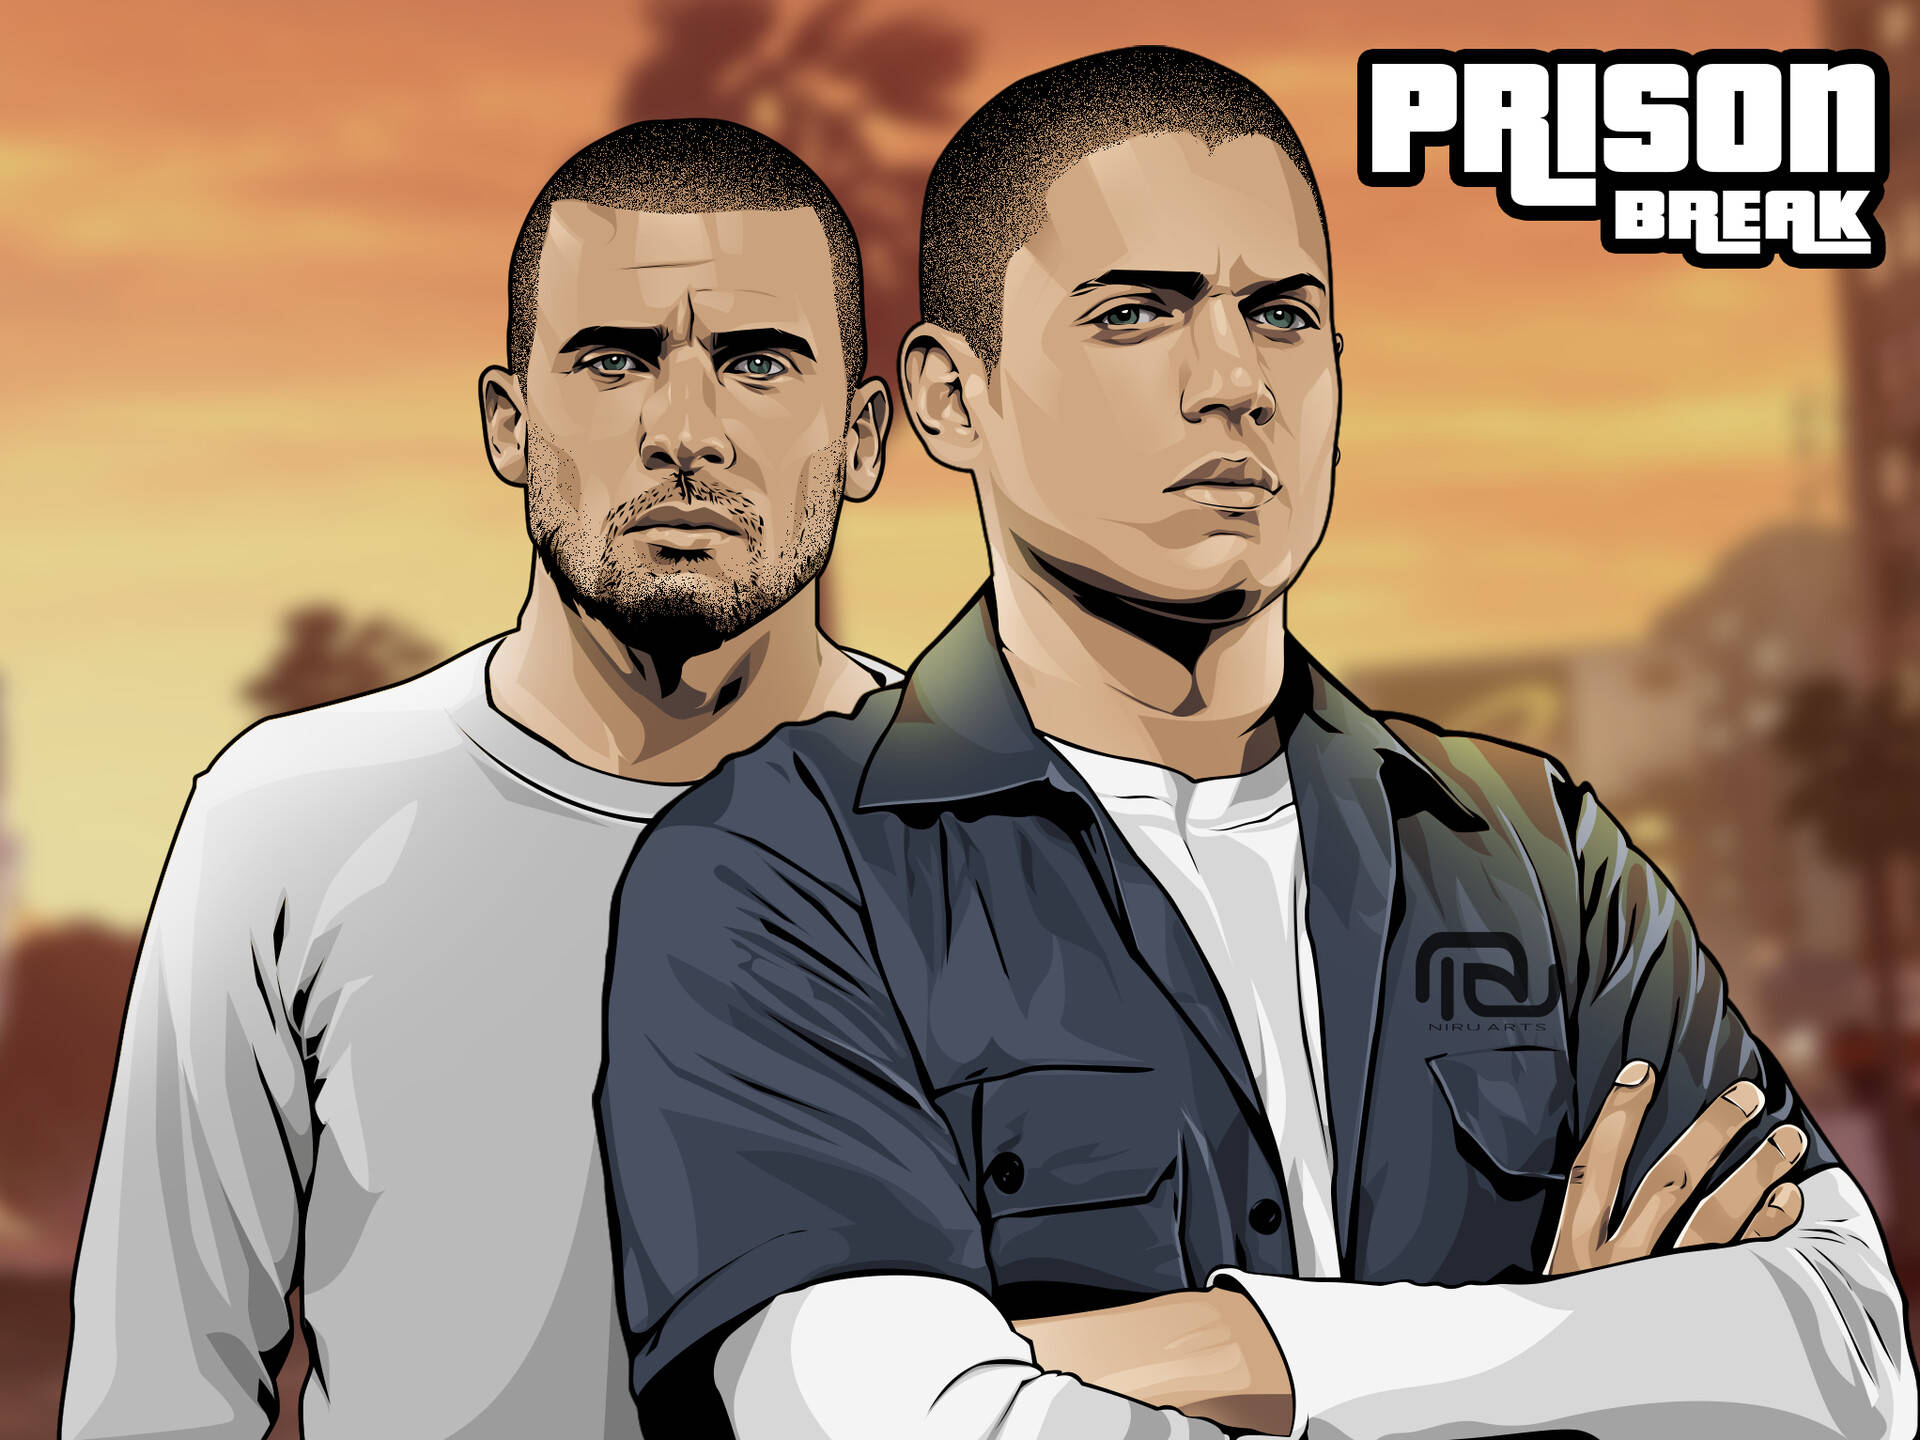 Prison Break Digital Graphic Cover